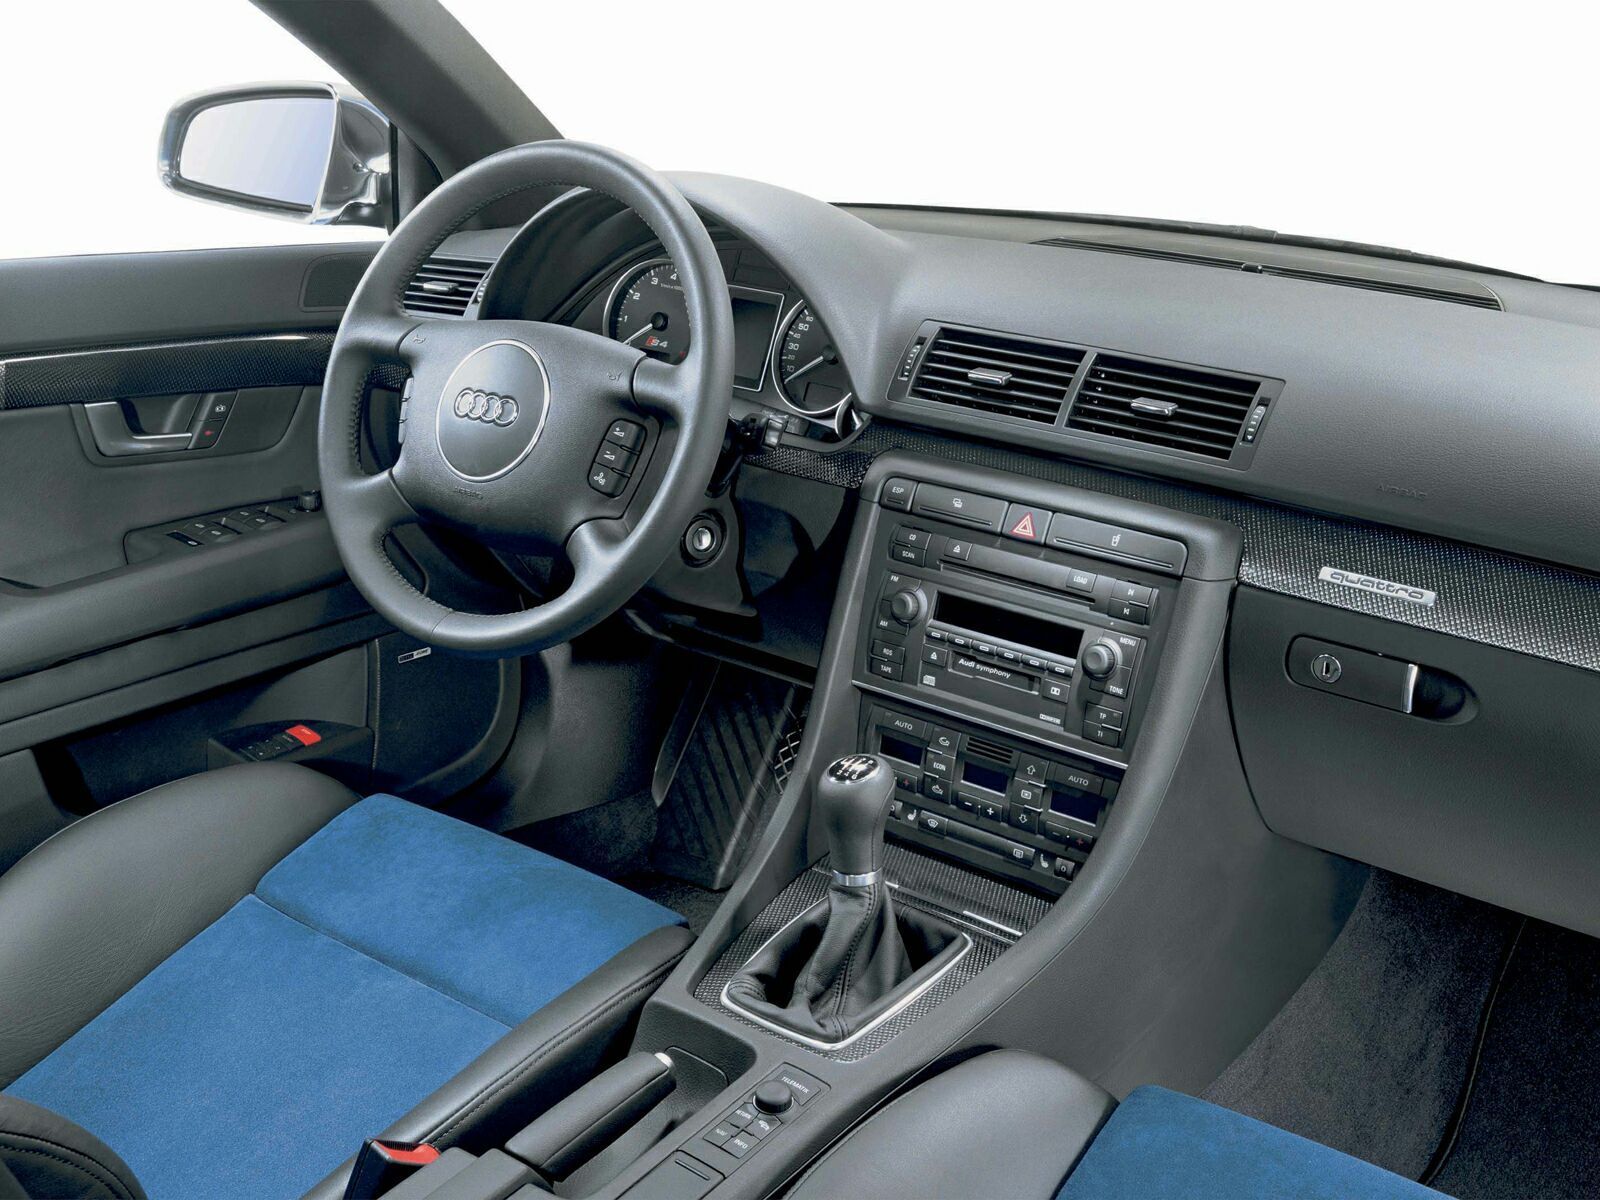 2003 - 2005 Audi S4